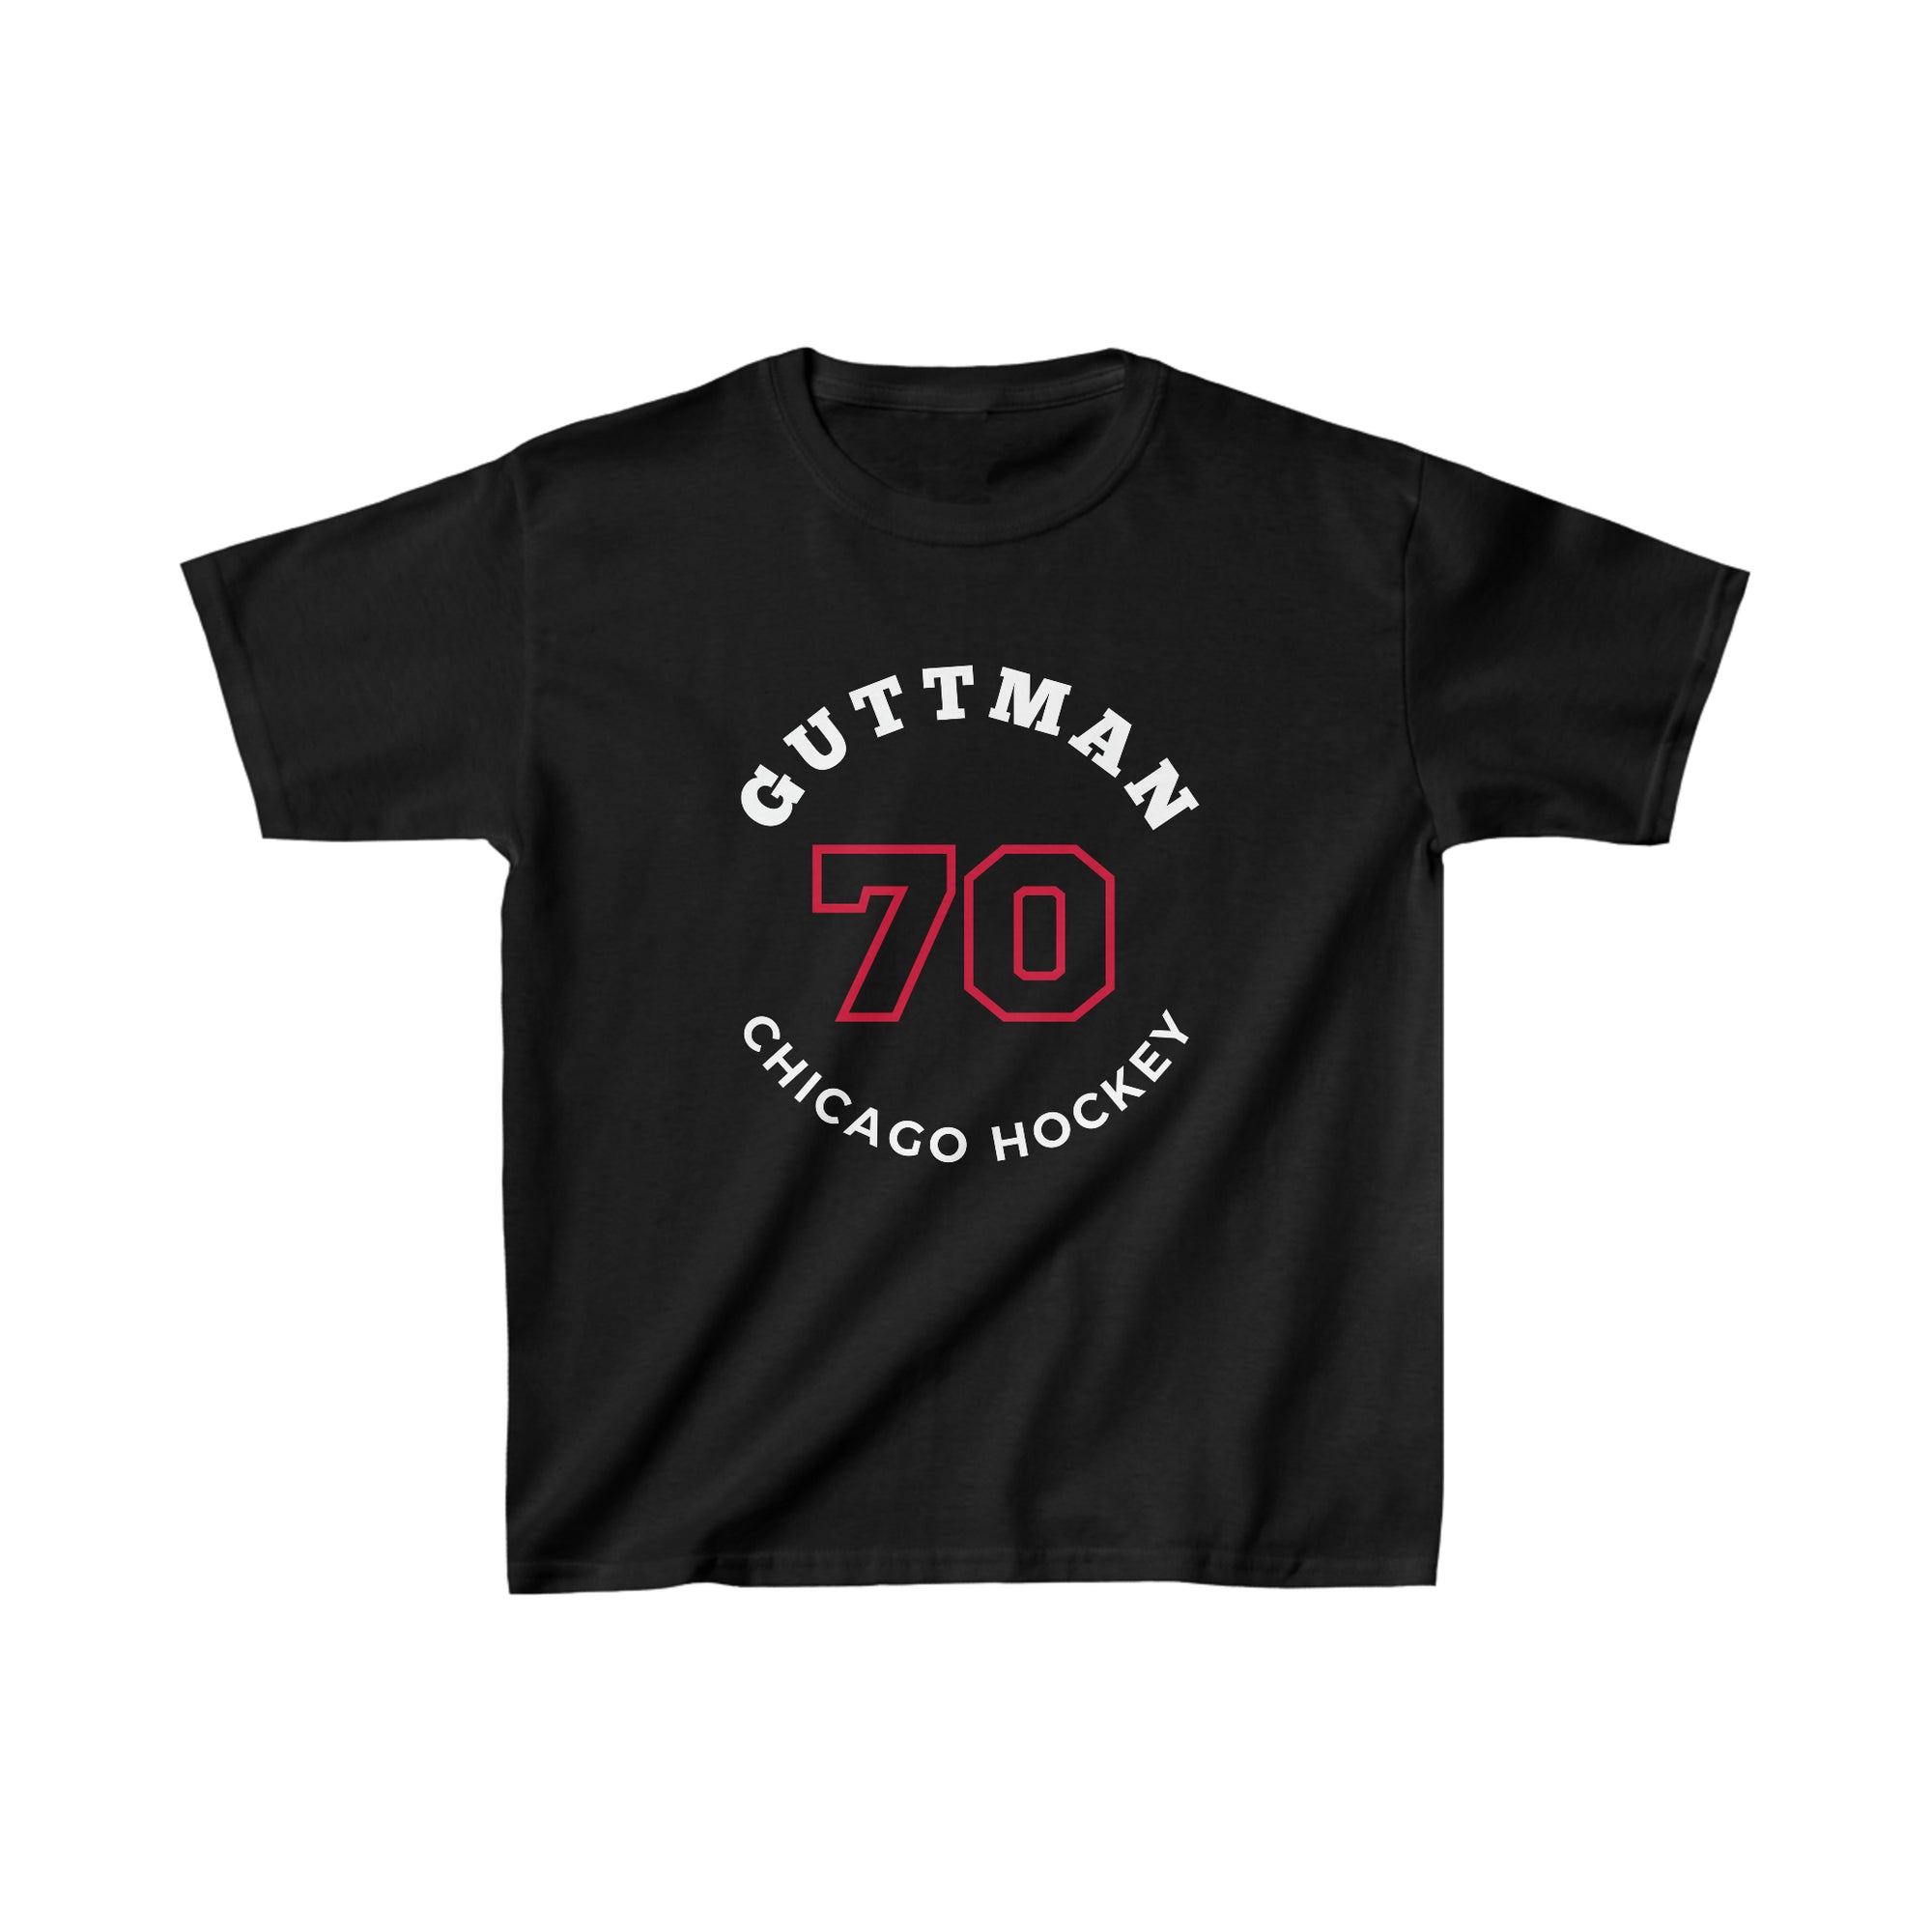 Guttman 70 Chicago Hockey Number Arch Design Kids Tee